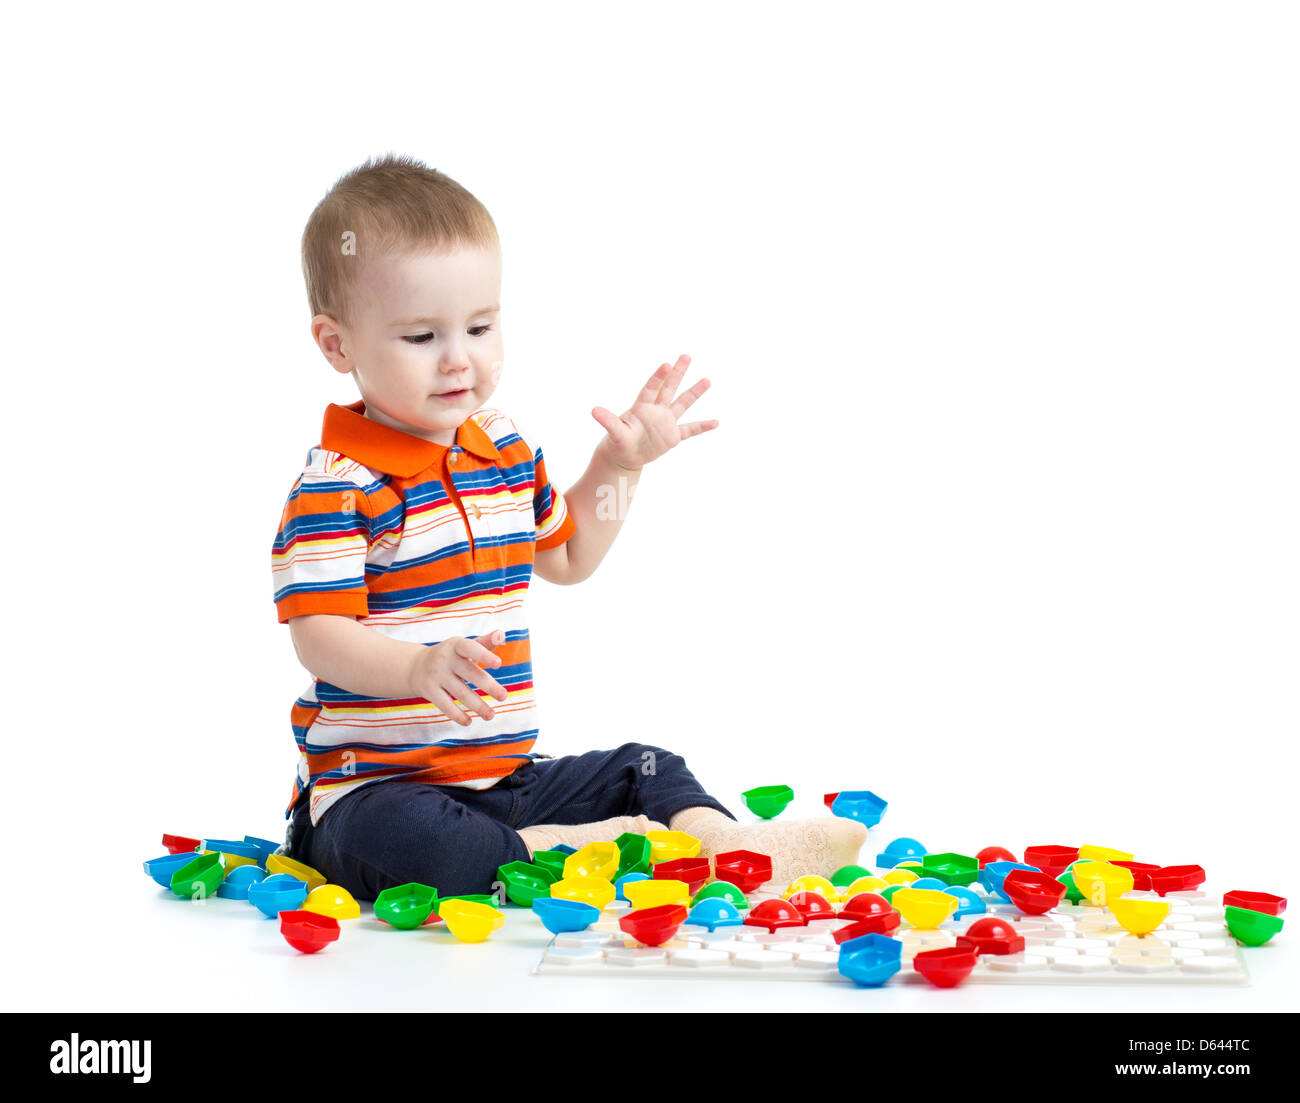 Entzückende kleine Junge Mosaik Spielzeug spielen Stockfoto